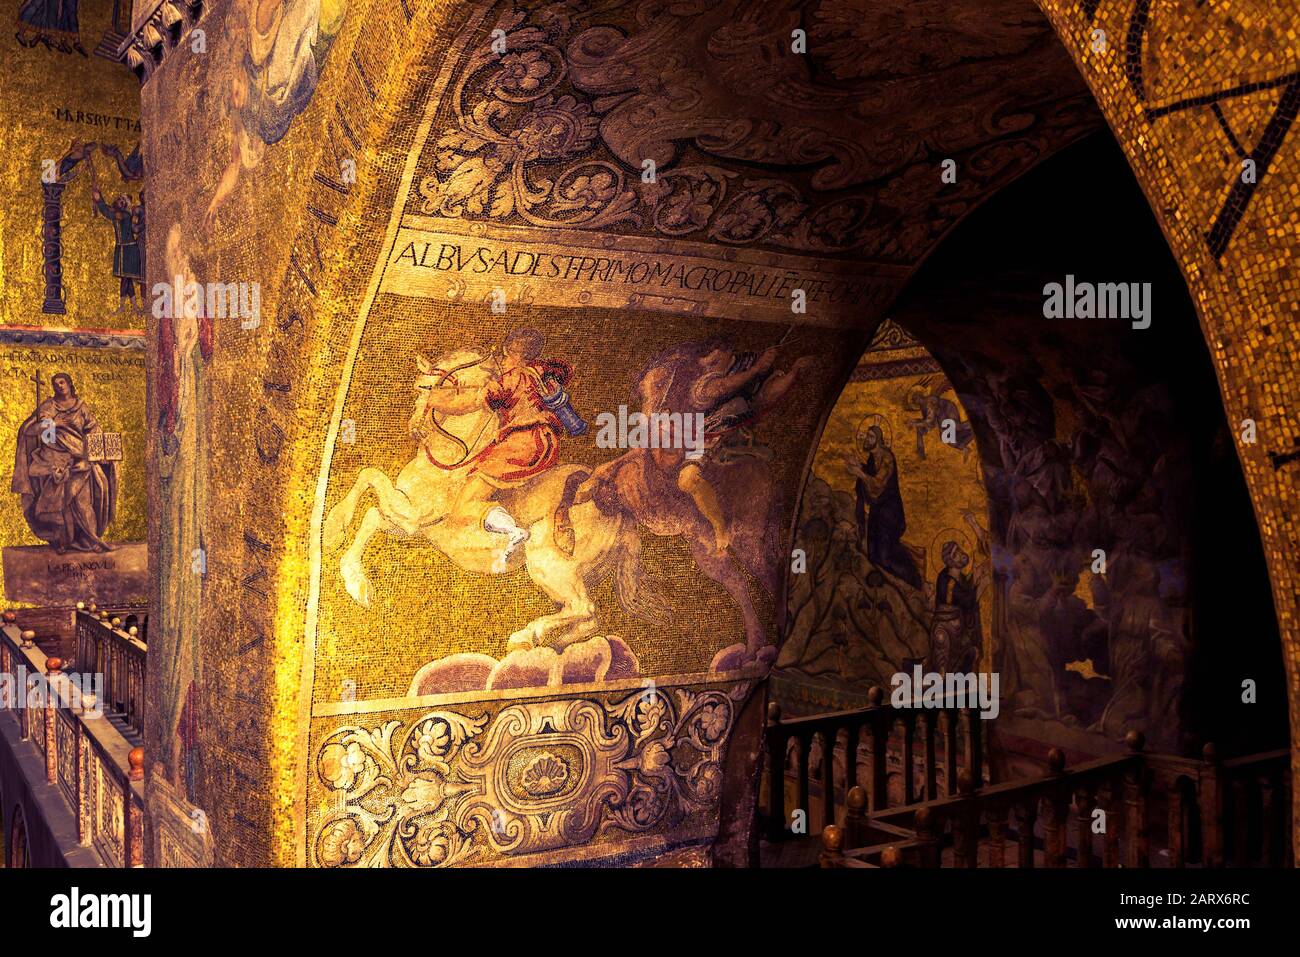 Venezia, Italia - 21 maggio 2017: Interno della Basilica di San Marco a Venezia. E' uno dei siti piu' conosciuti di Venezia. Bellissimo mosaico antico insi Foto Stock